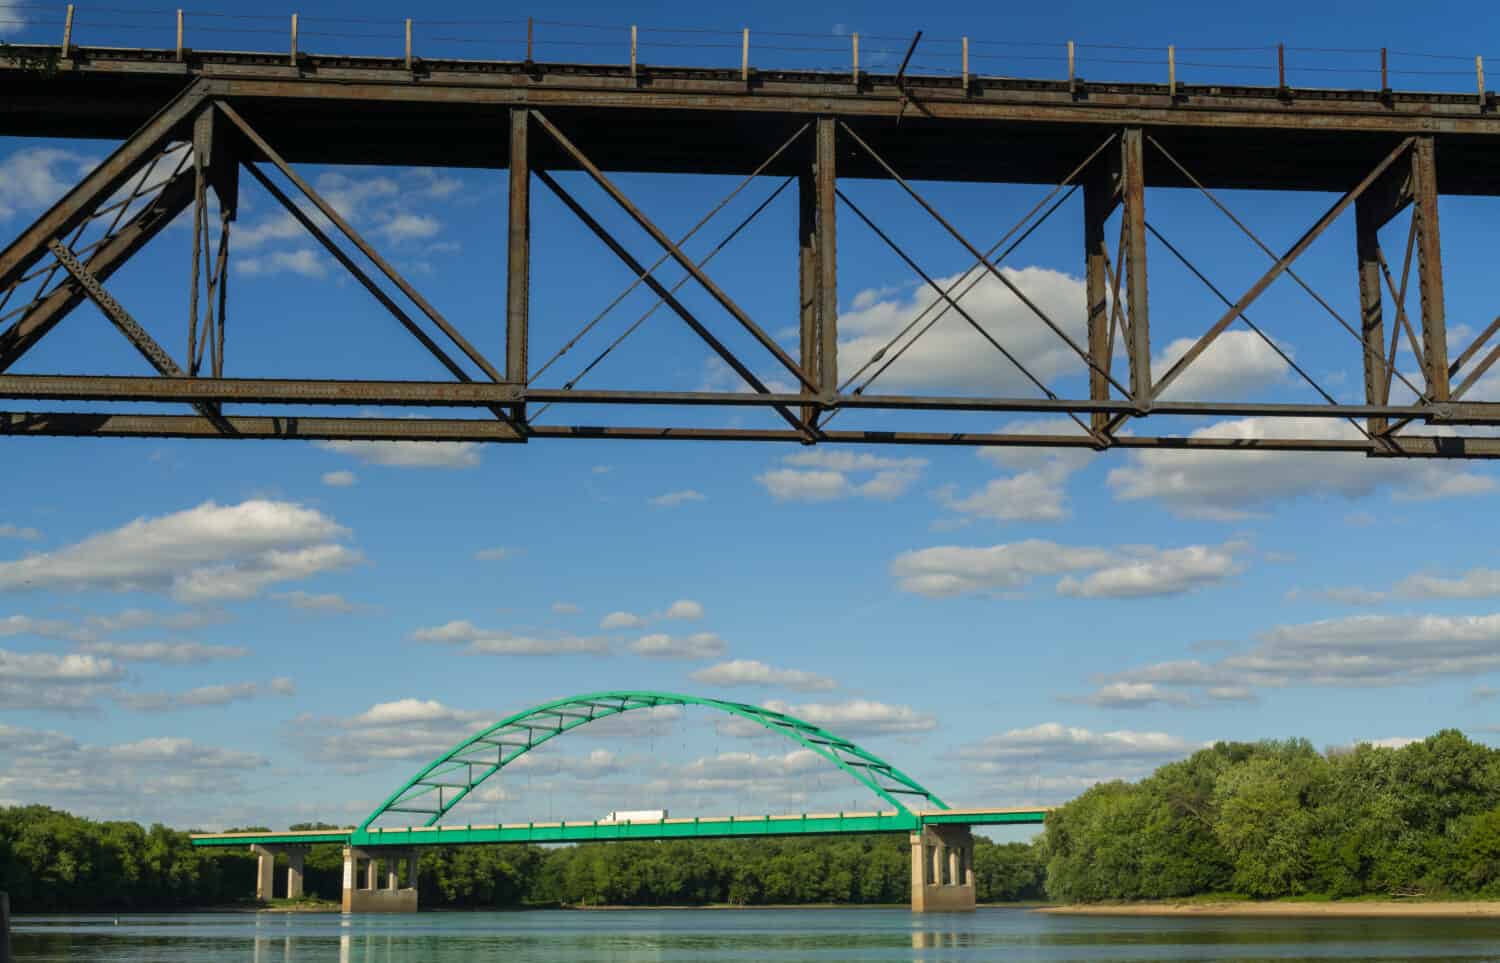 Lungo il fiume Illinois oltre il LaSalle Rail Bridge fino al Lincoln Memorial Bridge.  La Salle, Illinois, USA.